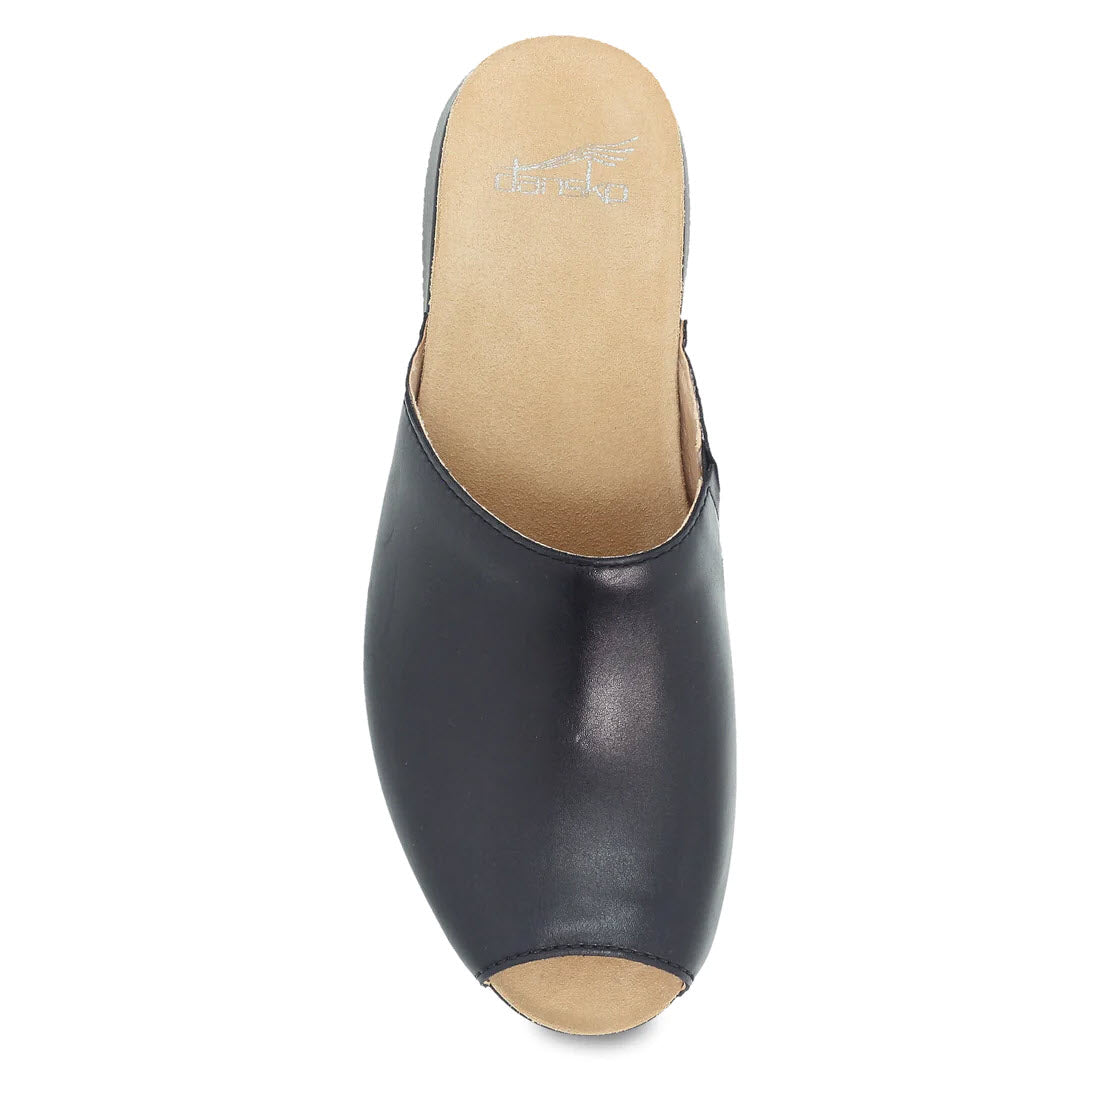 Top view of a Dansko RAVYN BLACK - WOMENS peep-toe mule shoe on a white background.